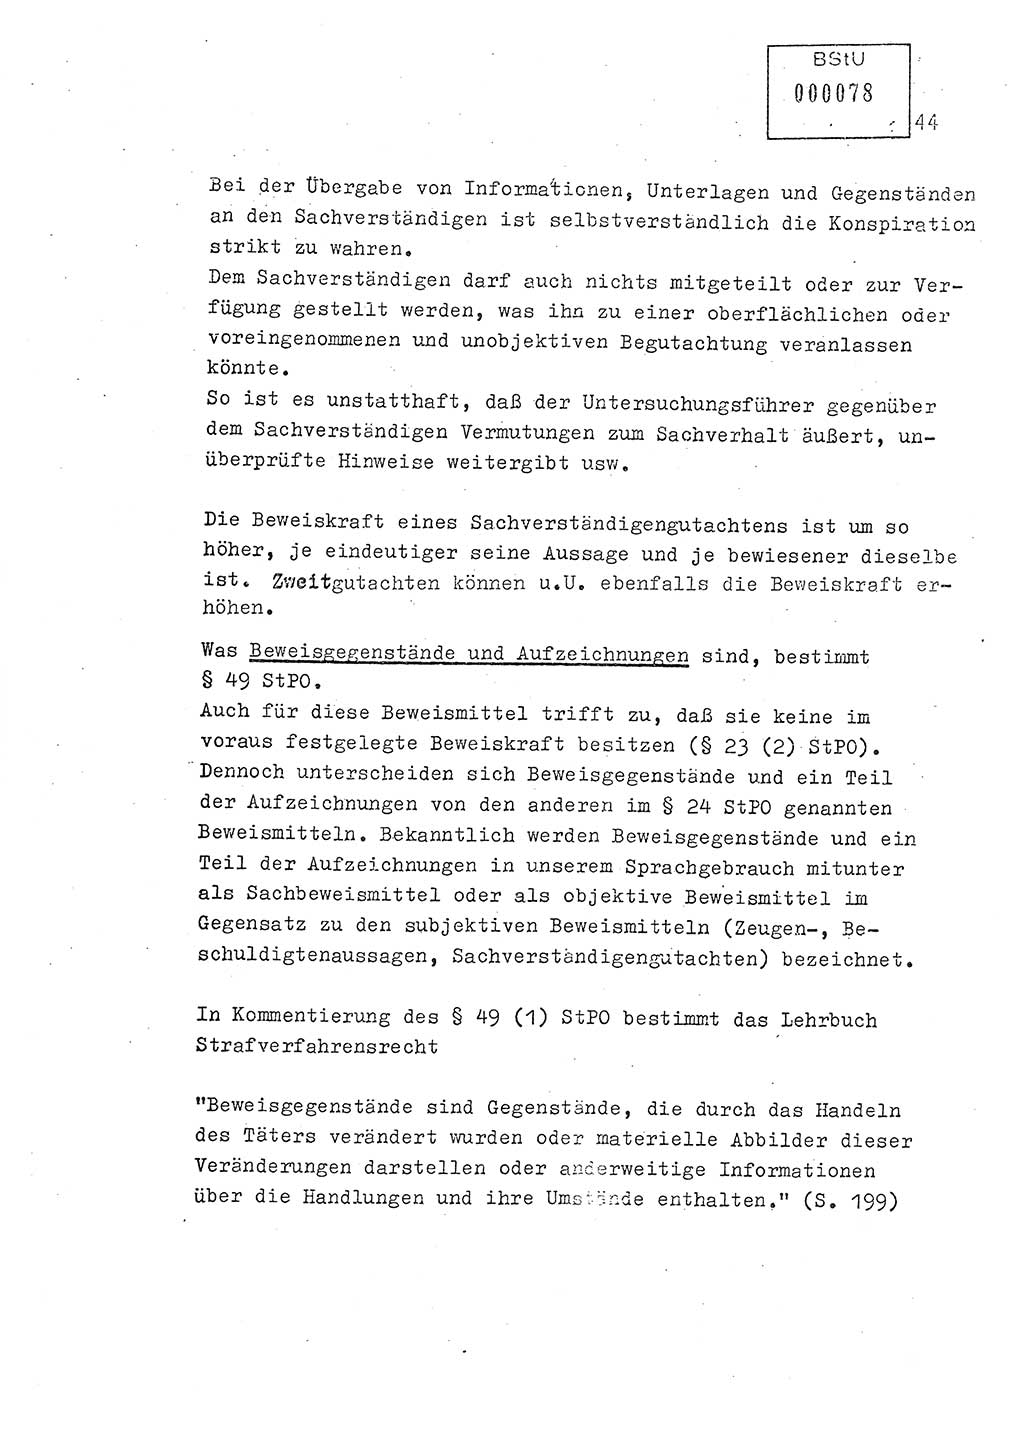 Lektion Ministerium für Staatssicherheit (MfS) [Deutsche Demokratische Republik (DDR)], Hauptabteilung (HA) Ⅸ, Berlin 1979, Seite 44 (Lekt. Bew.-Fü. EV MfS DDR HA Ⅸ 1979, S. 44)